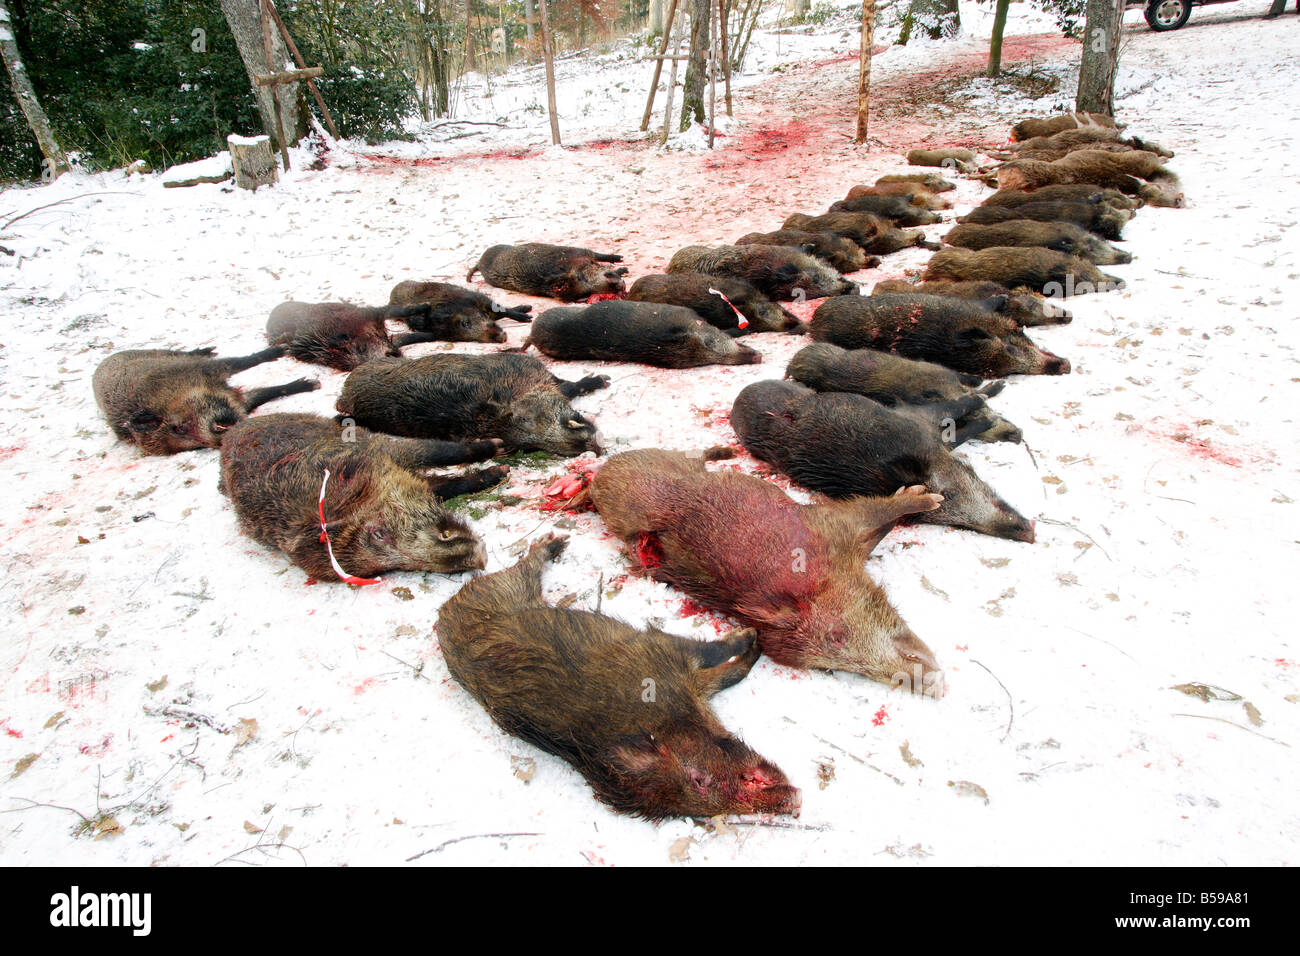 El jabalí (Sus scrofa), Animales muertos después de una búsqueda Foto de stock